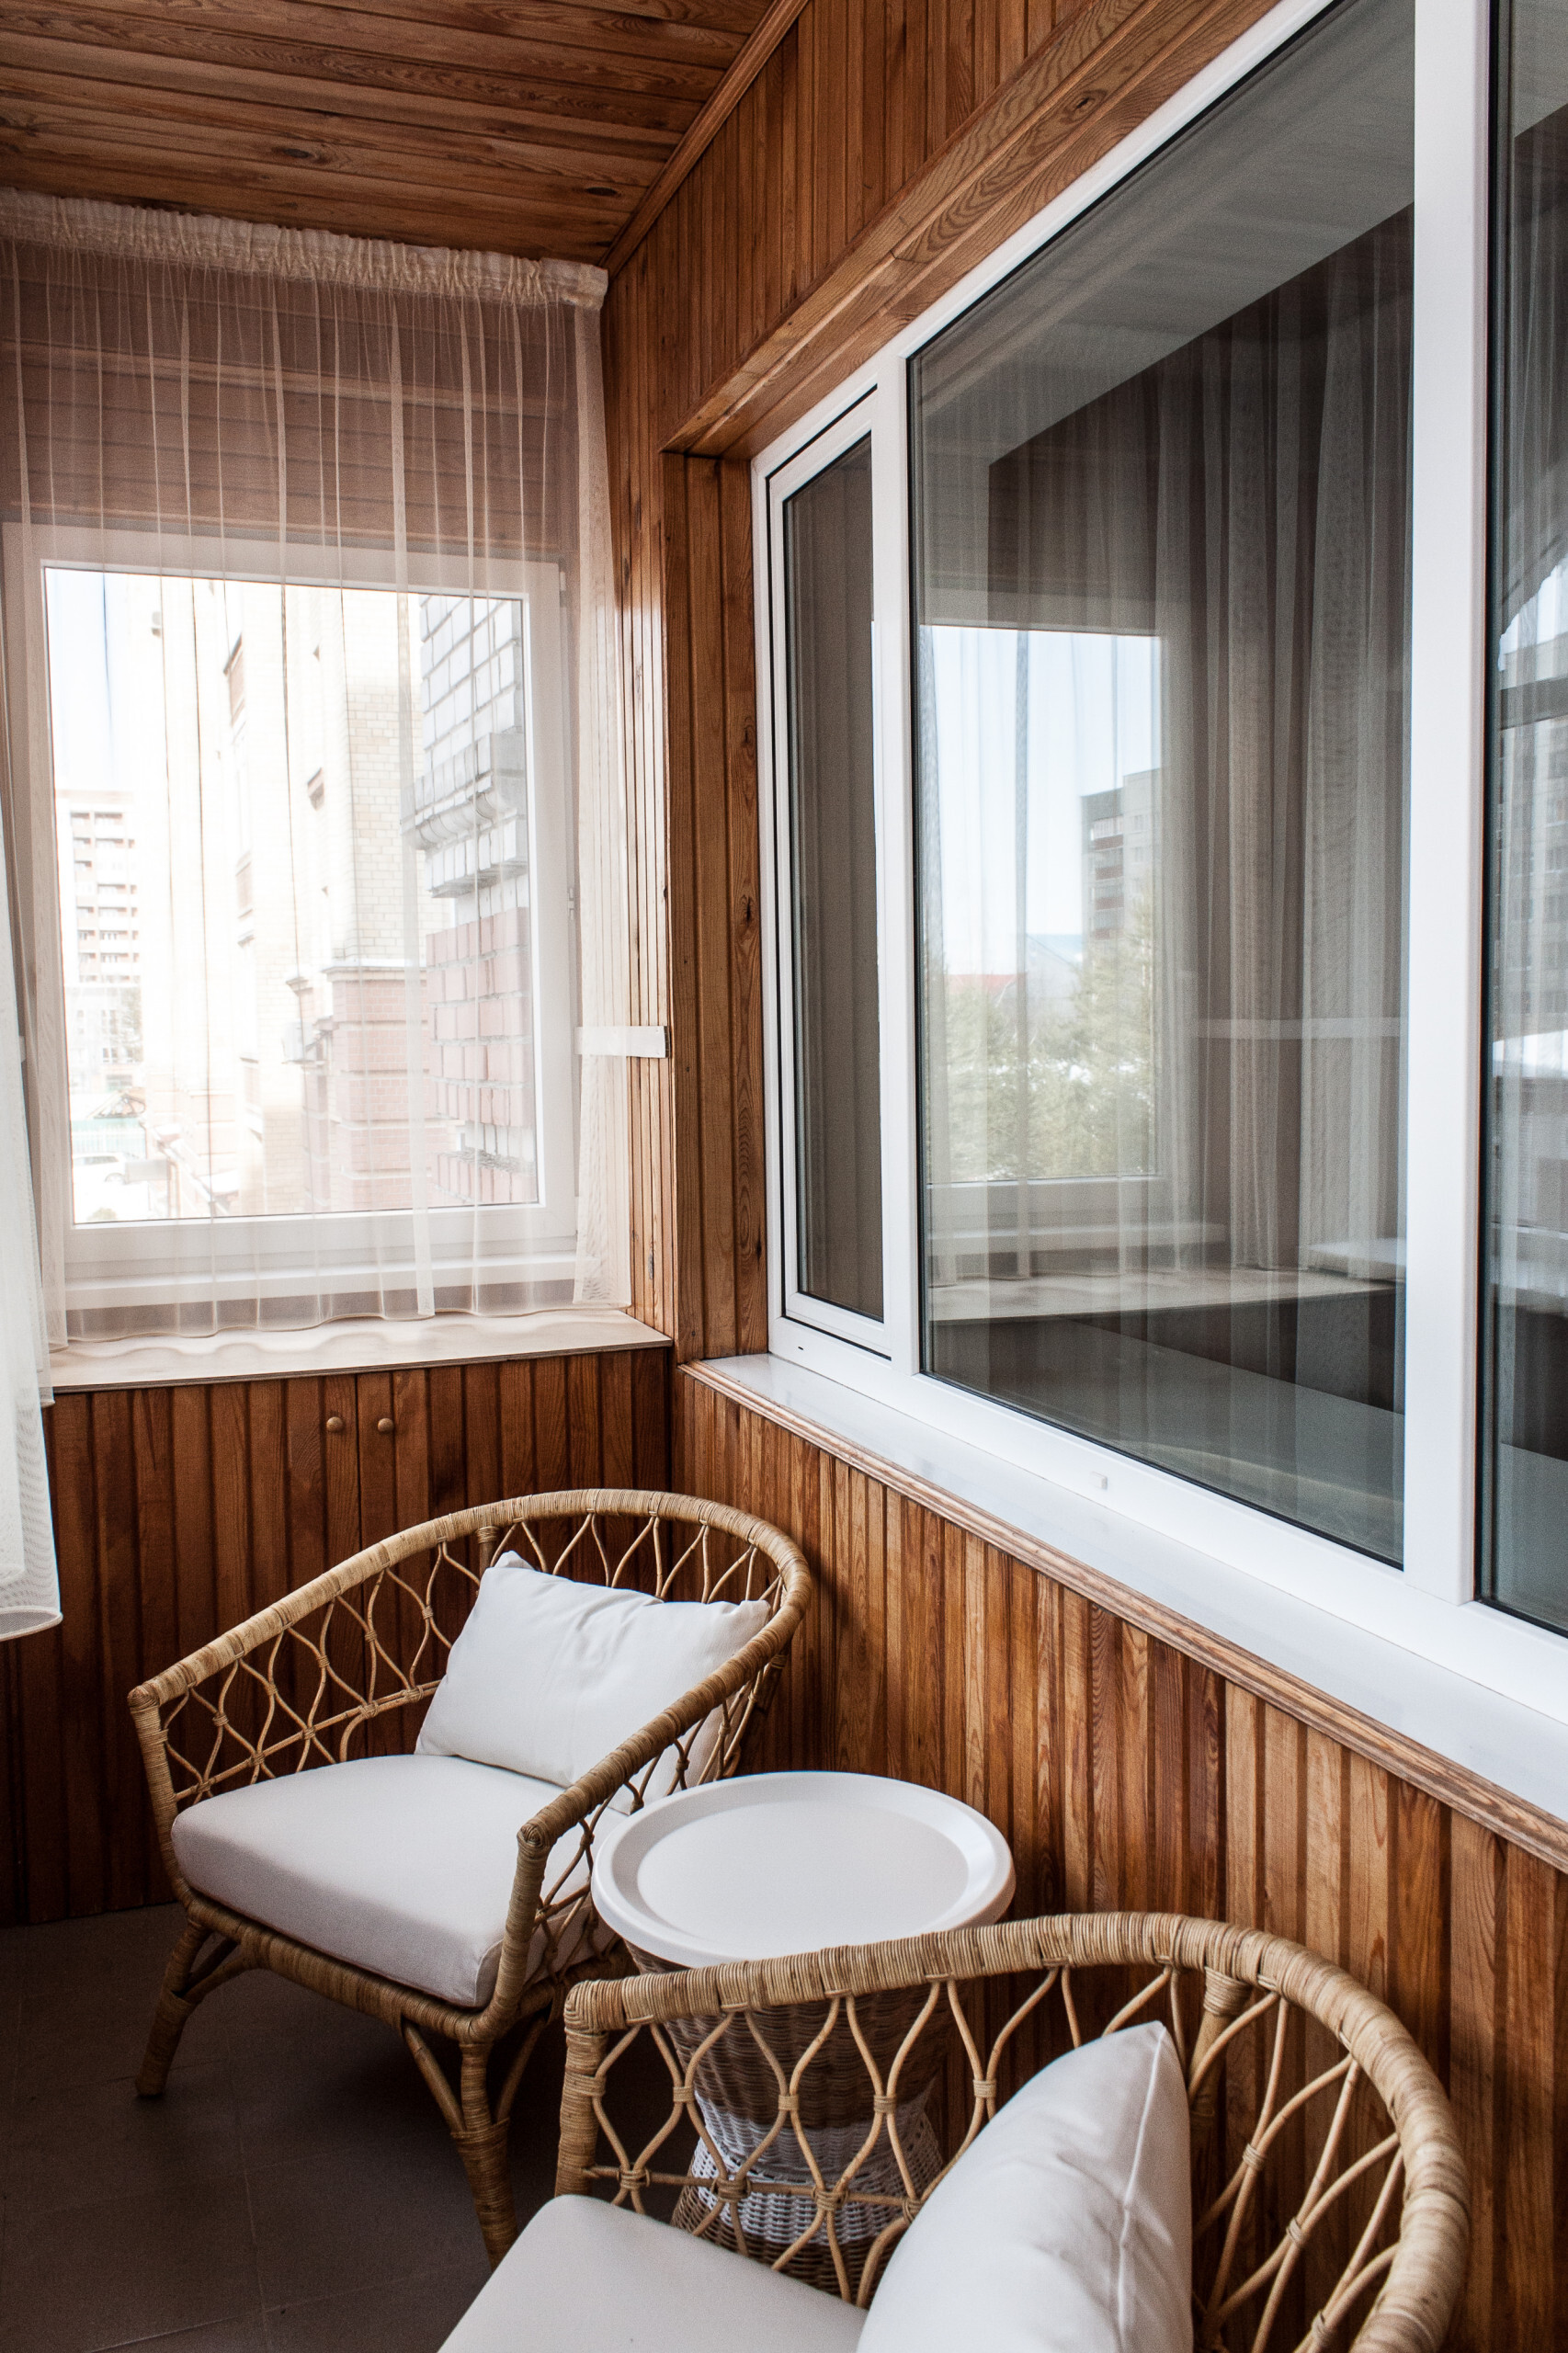 Интерьер балкона с окном, балконом и панорамными окнами в современном стиле